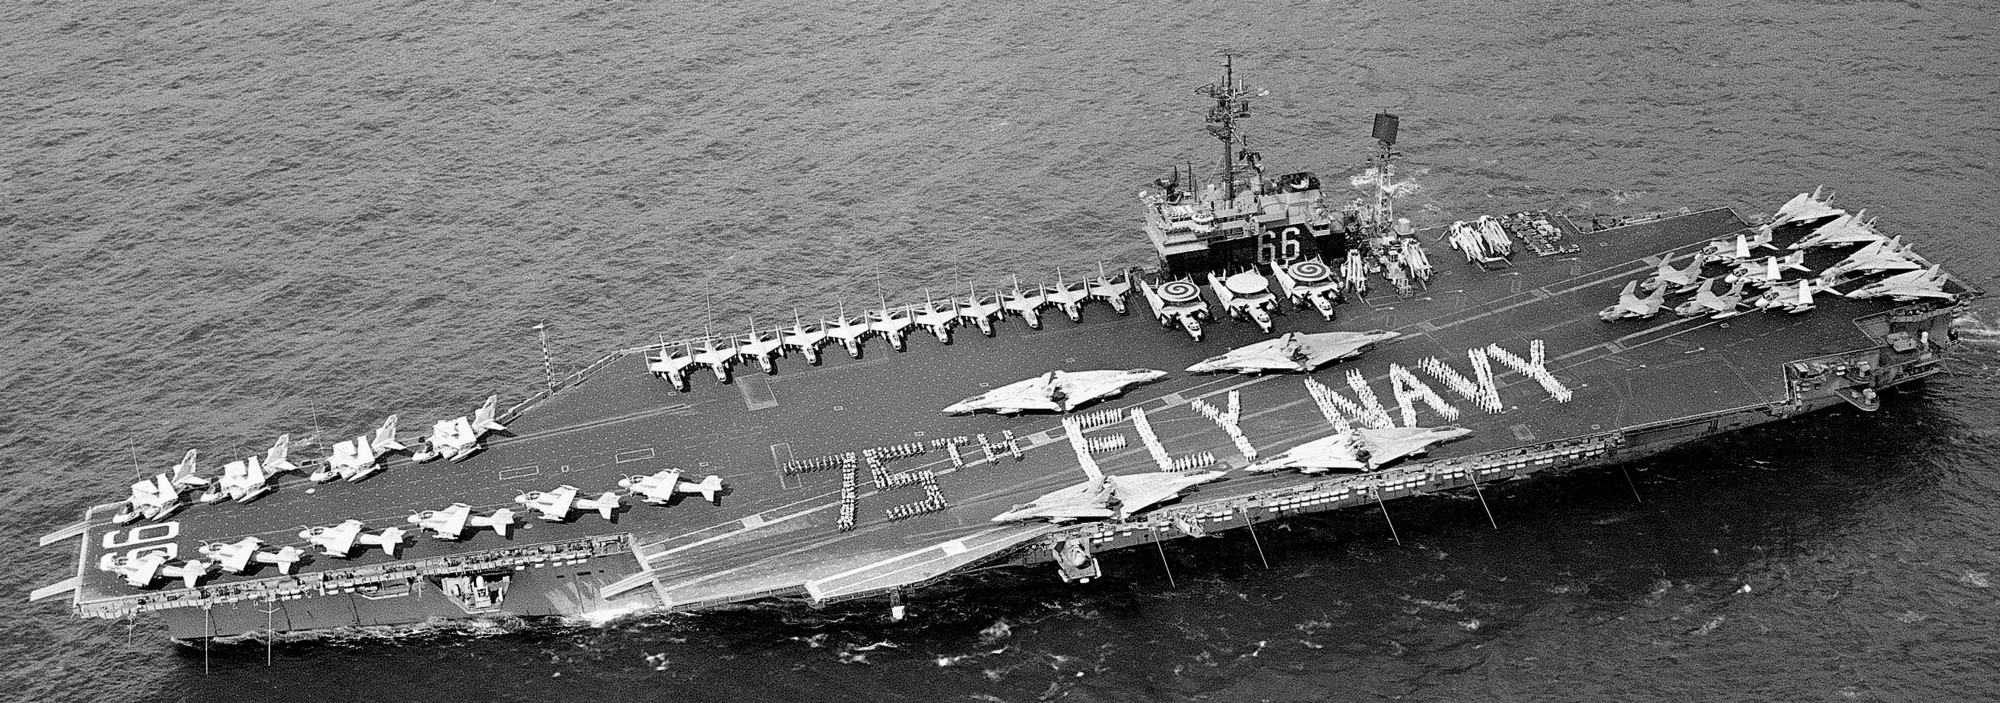 cv-66 uss america kitty hawk class aircraft carrier air wing cvw-1 us navy 90